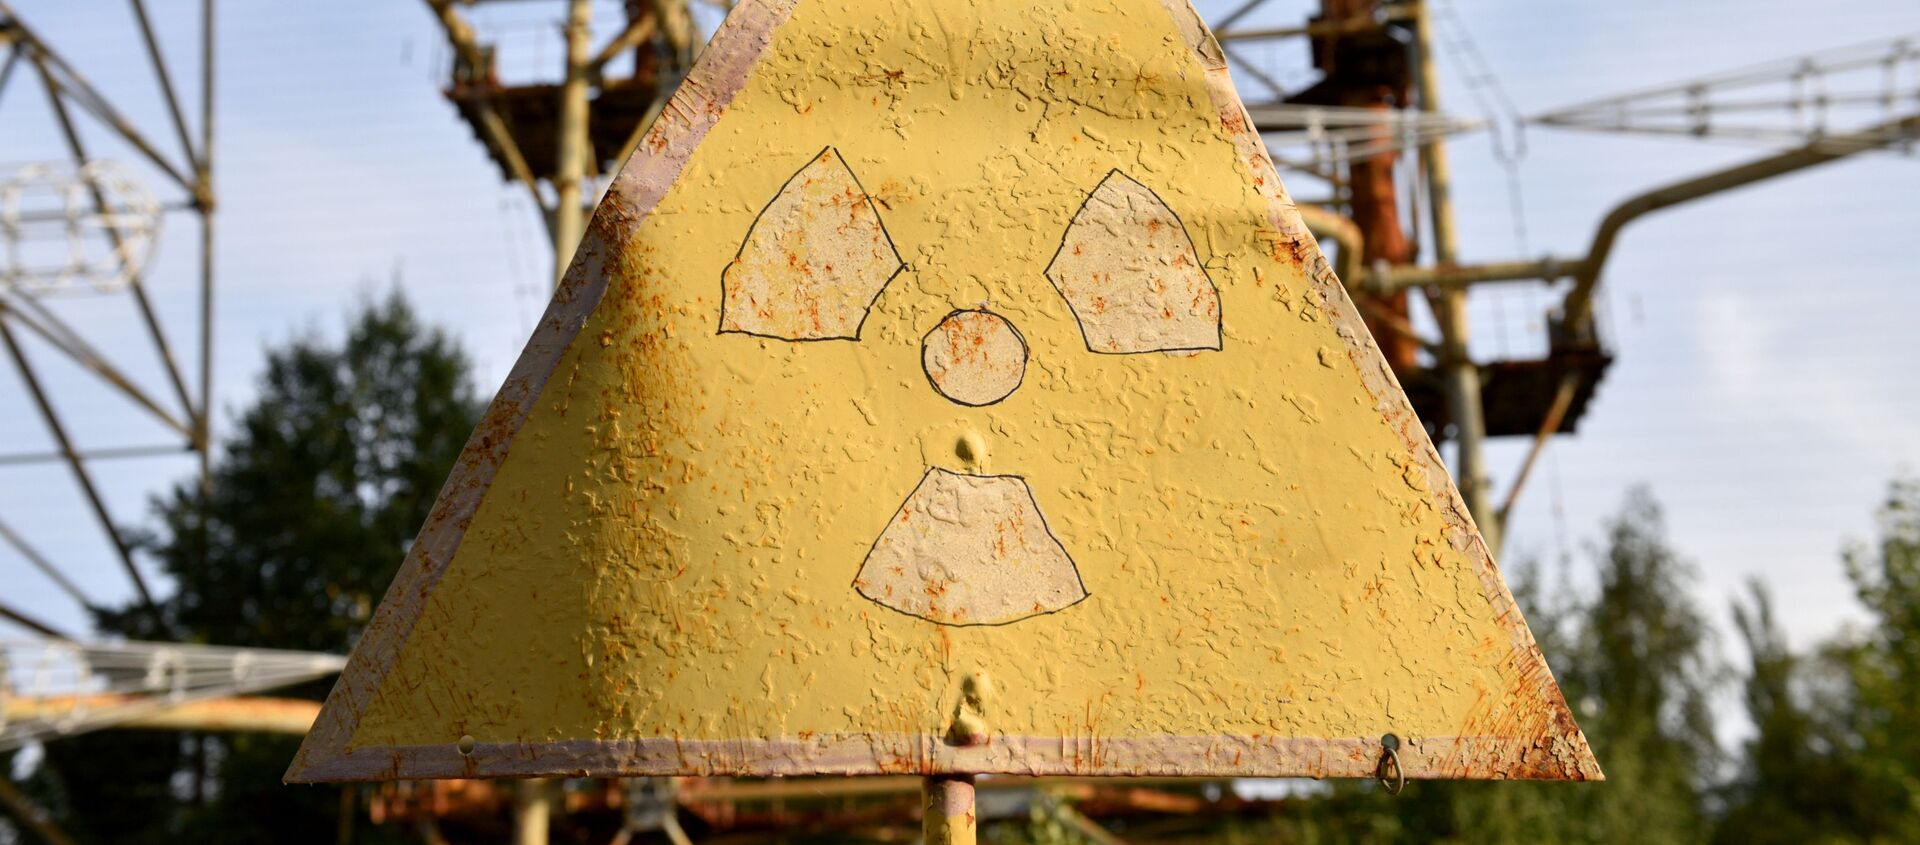 Bảng hiệu cảnh báo bức xạ trong khu vực loại trừ của nhà máy điện hạt nhân Chernobyl. - Sputnik Việt Nam, 1920, 26.04.2021